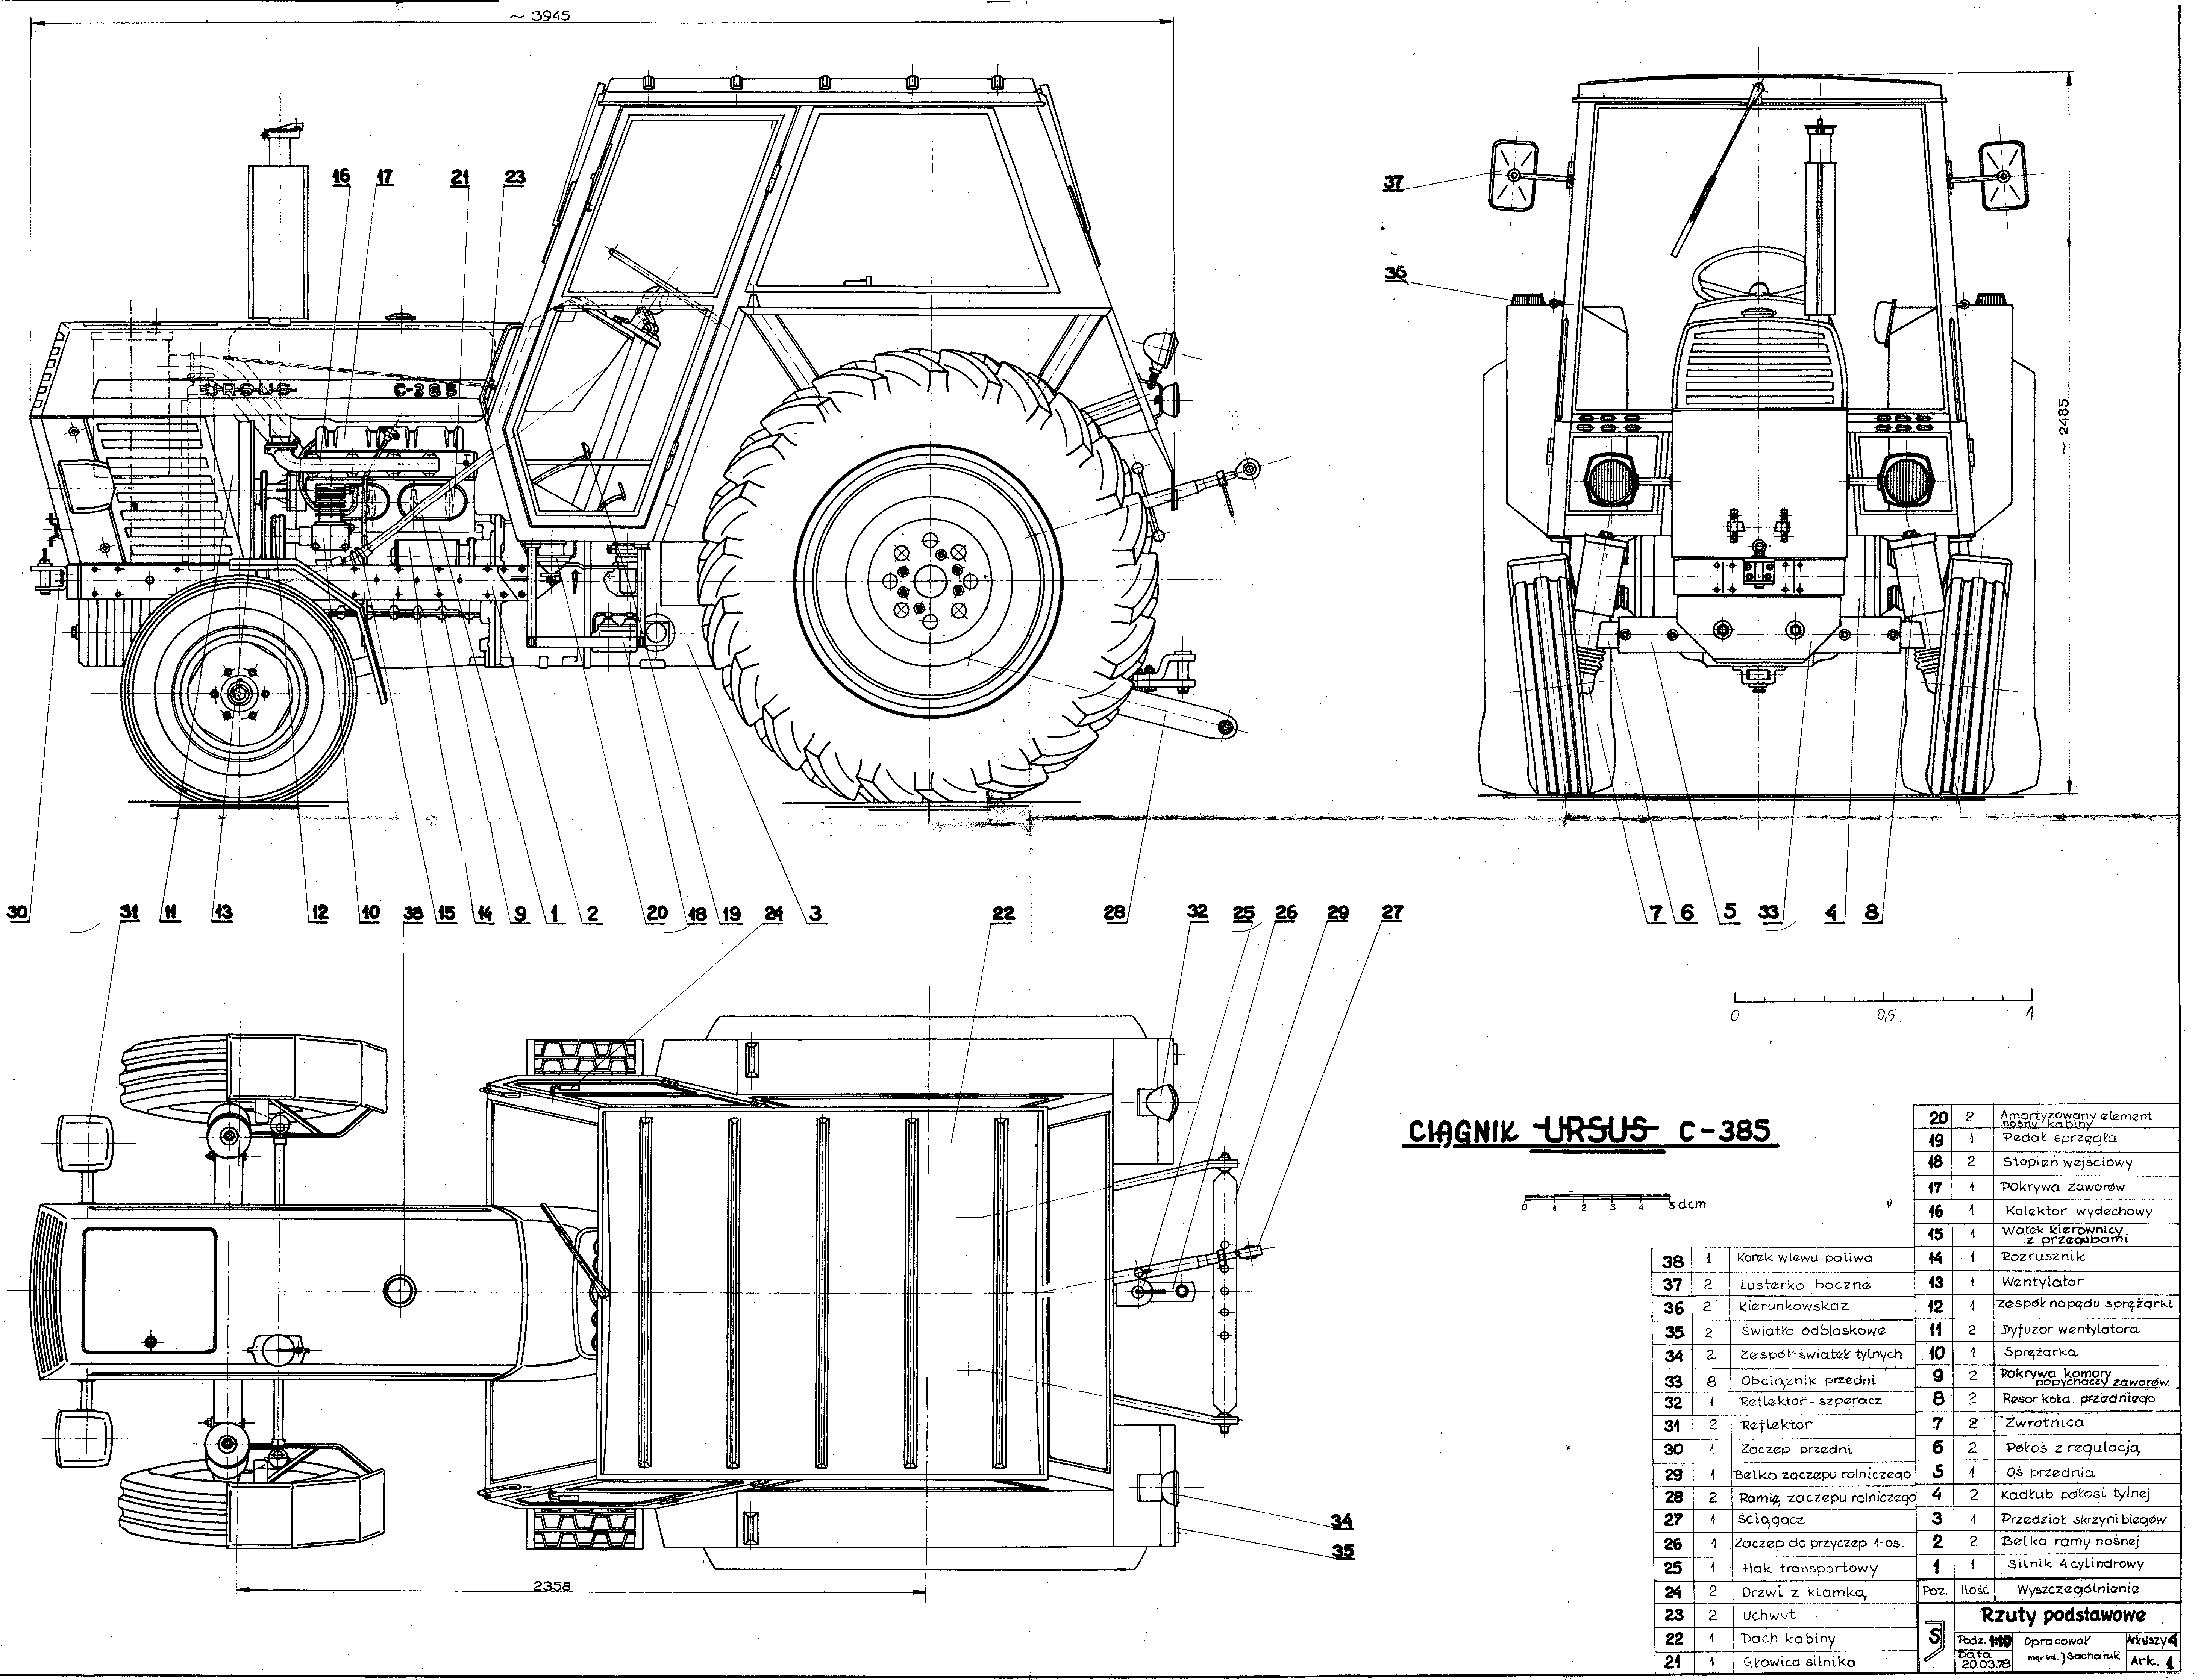 Ursus C385 blueprint